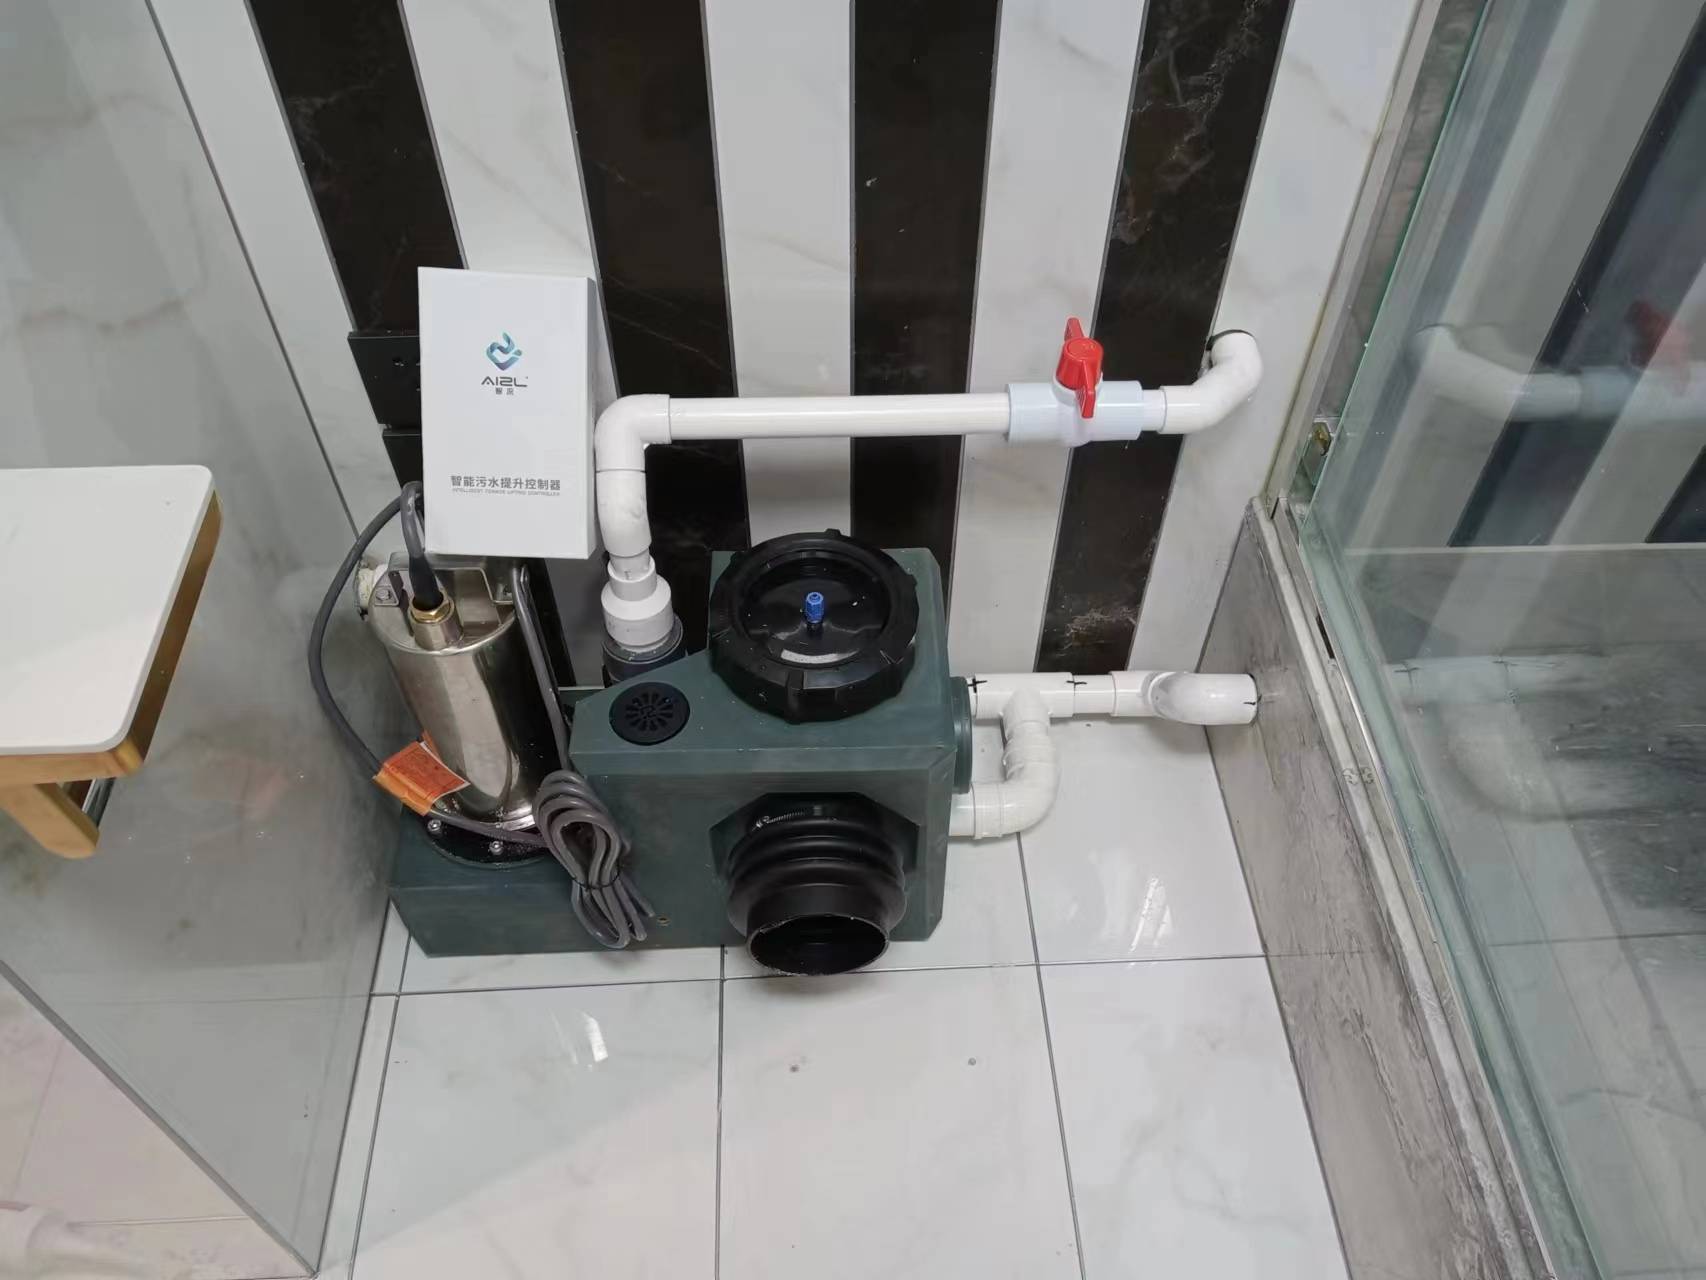 华为手机进水声波排水
:智流的智能污水提升器，机器连续排水无压力